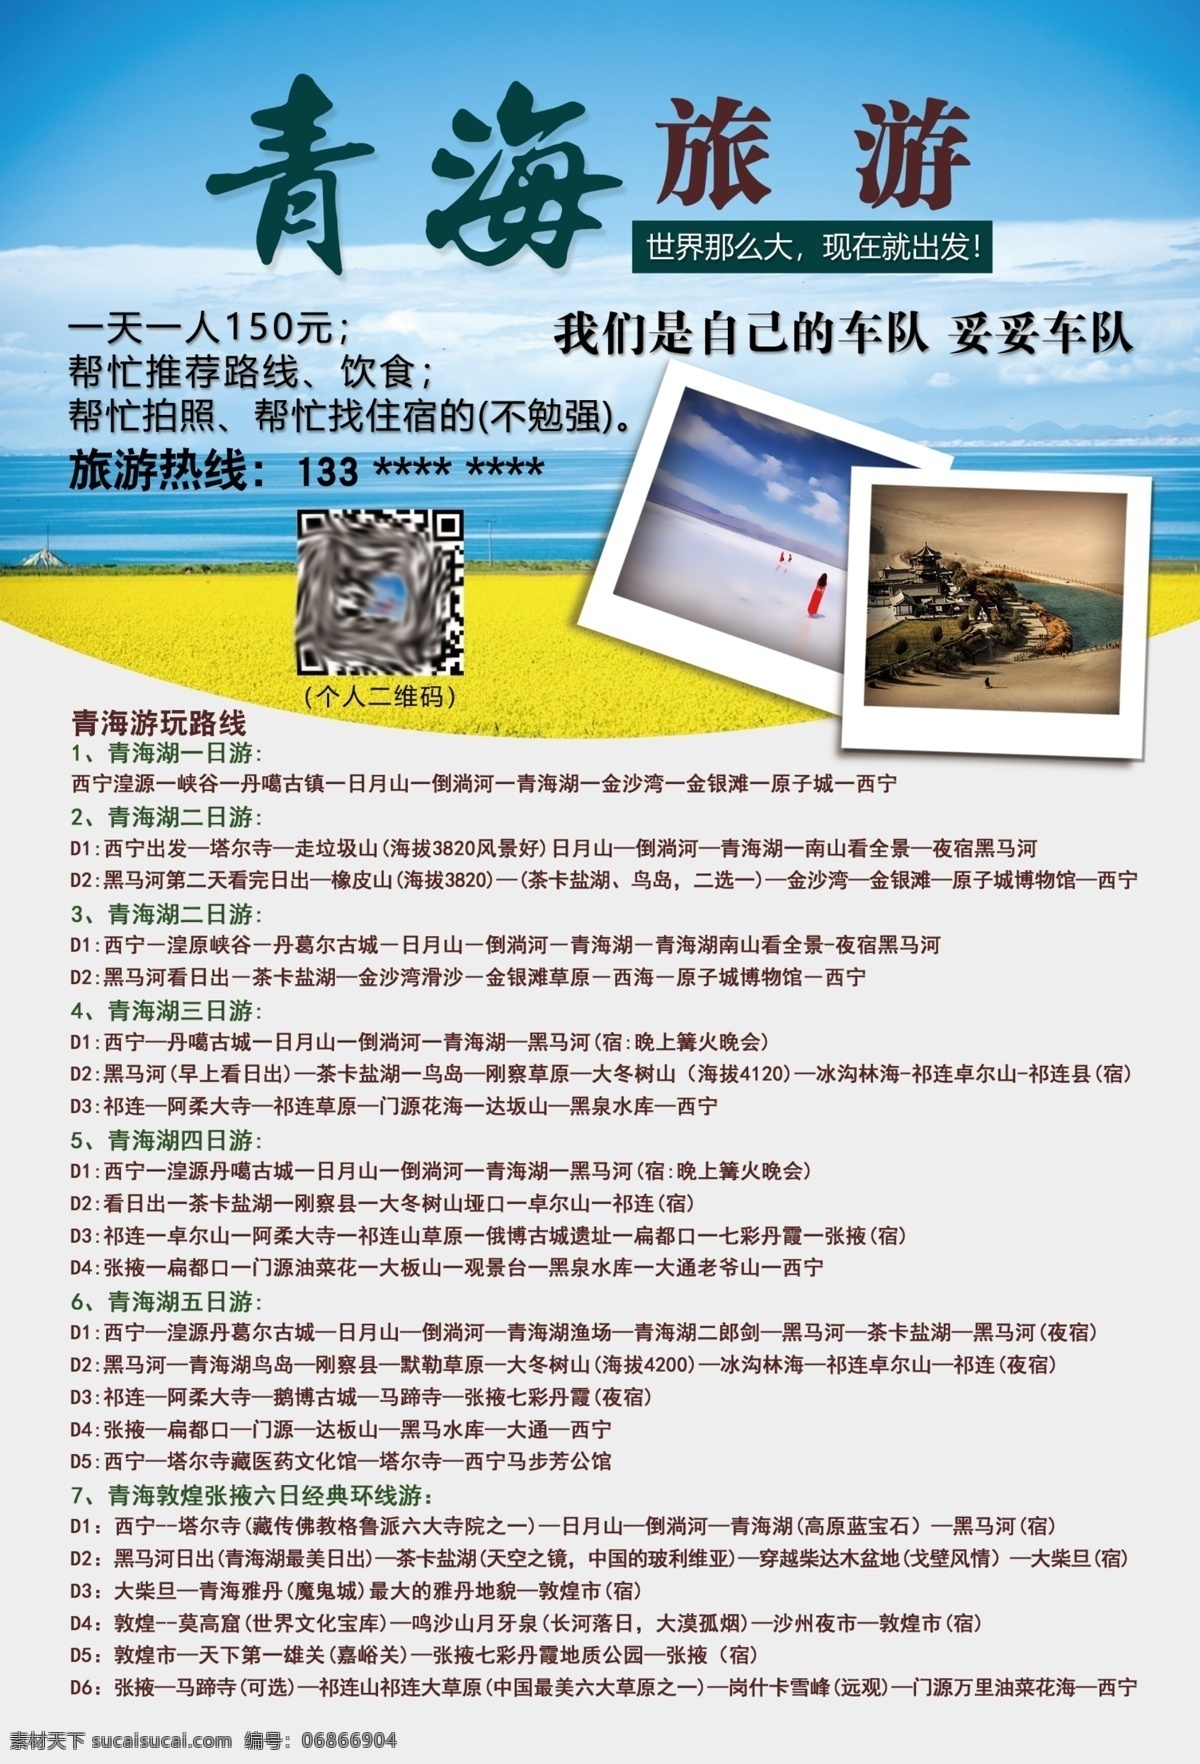 青海旅游 青海 风景 旅游 宣传 单页 dm宣传单